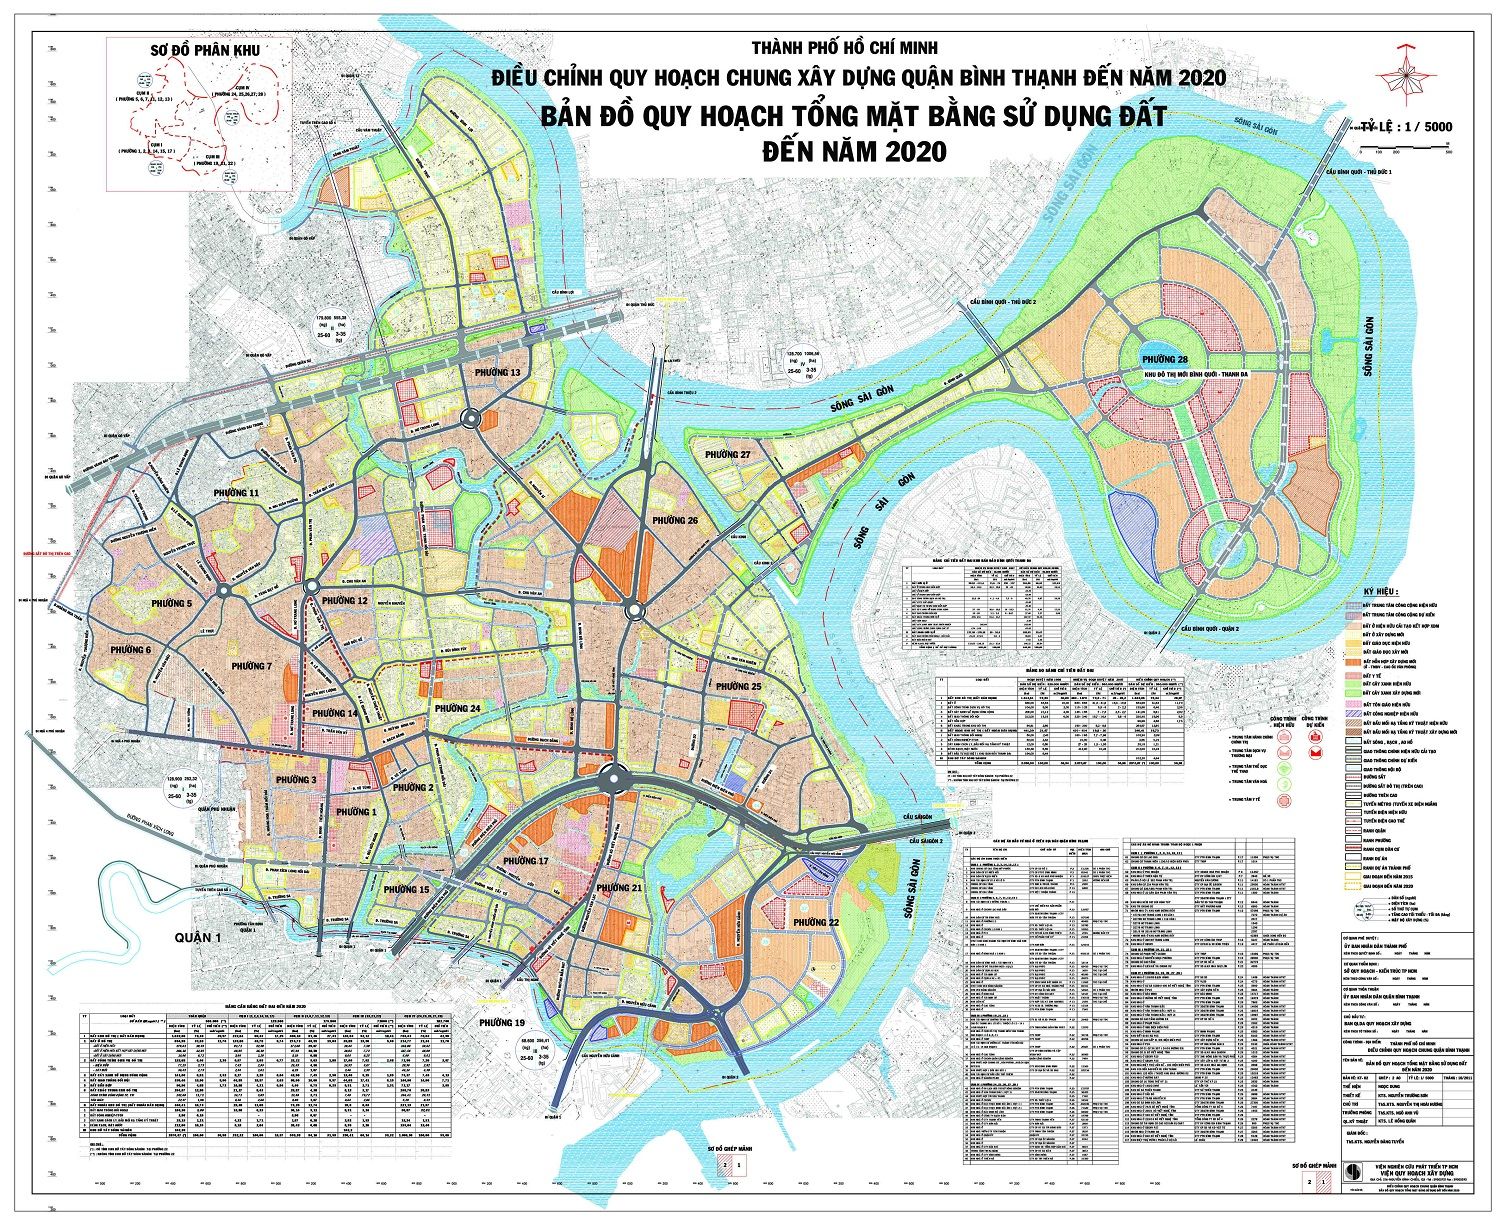 Khám phá bản đồ quy hoạch các quận, huyện TP.HCM mới nhất năm 2024 để biết thêm về những kế hoạch phát triển hạ tầng và các dự án mới sắp triển khai trong thành phố.